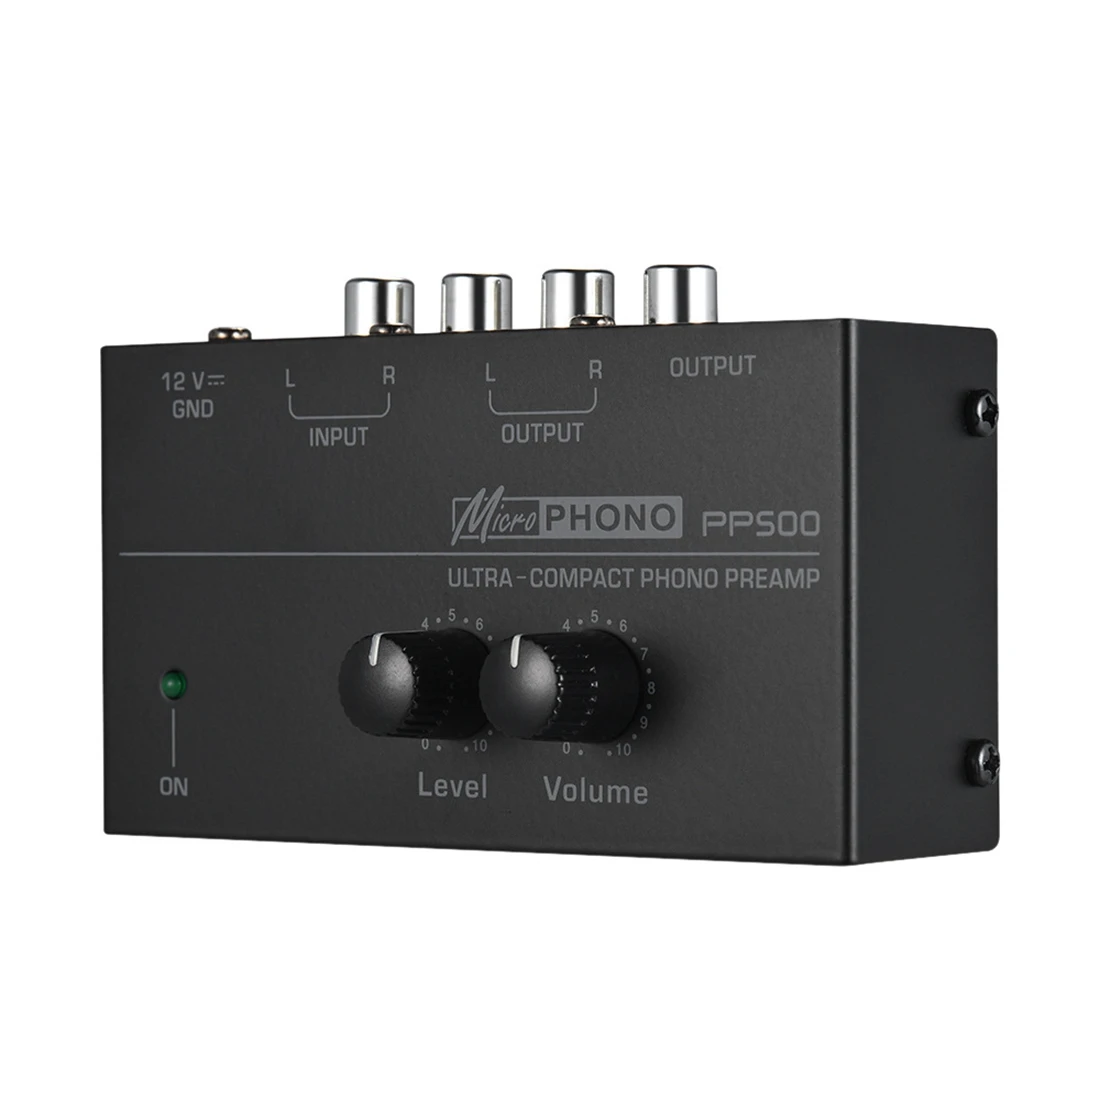 

Ультракомпактный предусилитель для фонографа PP500 с басами, регулировкой громкости и тройным балансом, предусилитель для проигрывателя, вилка стандарта США